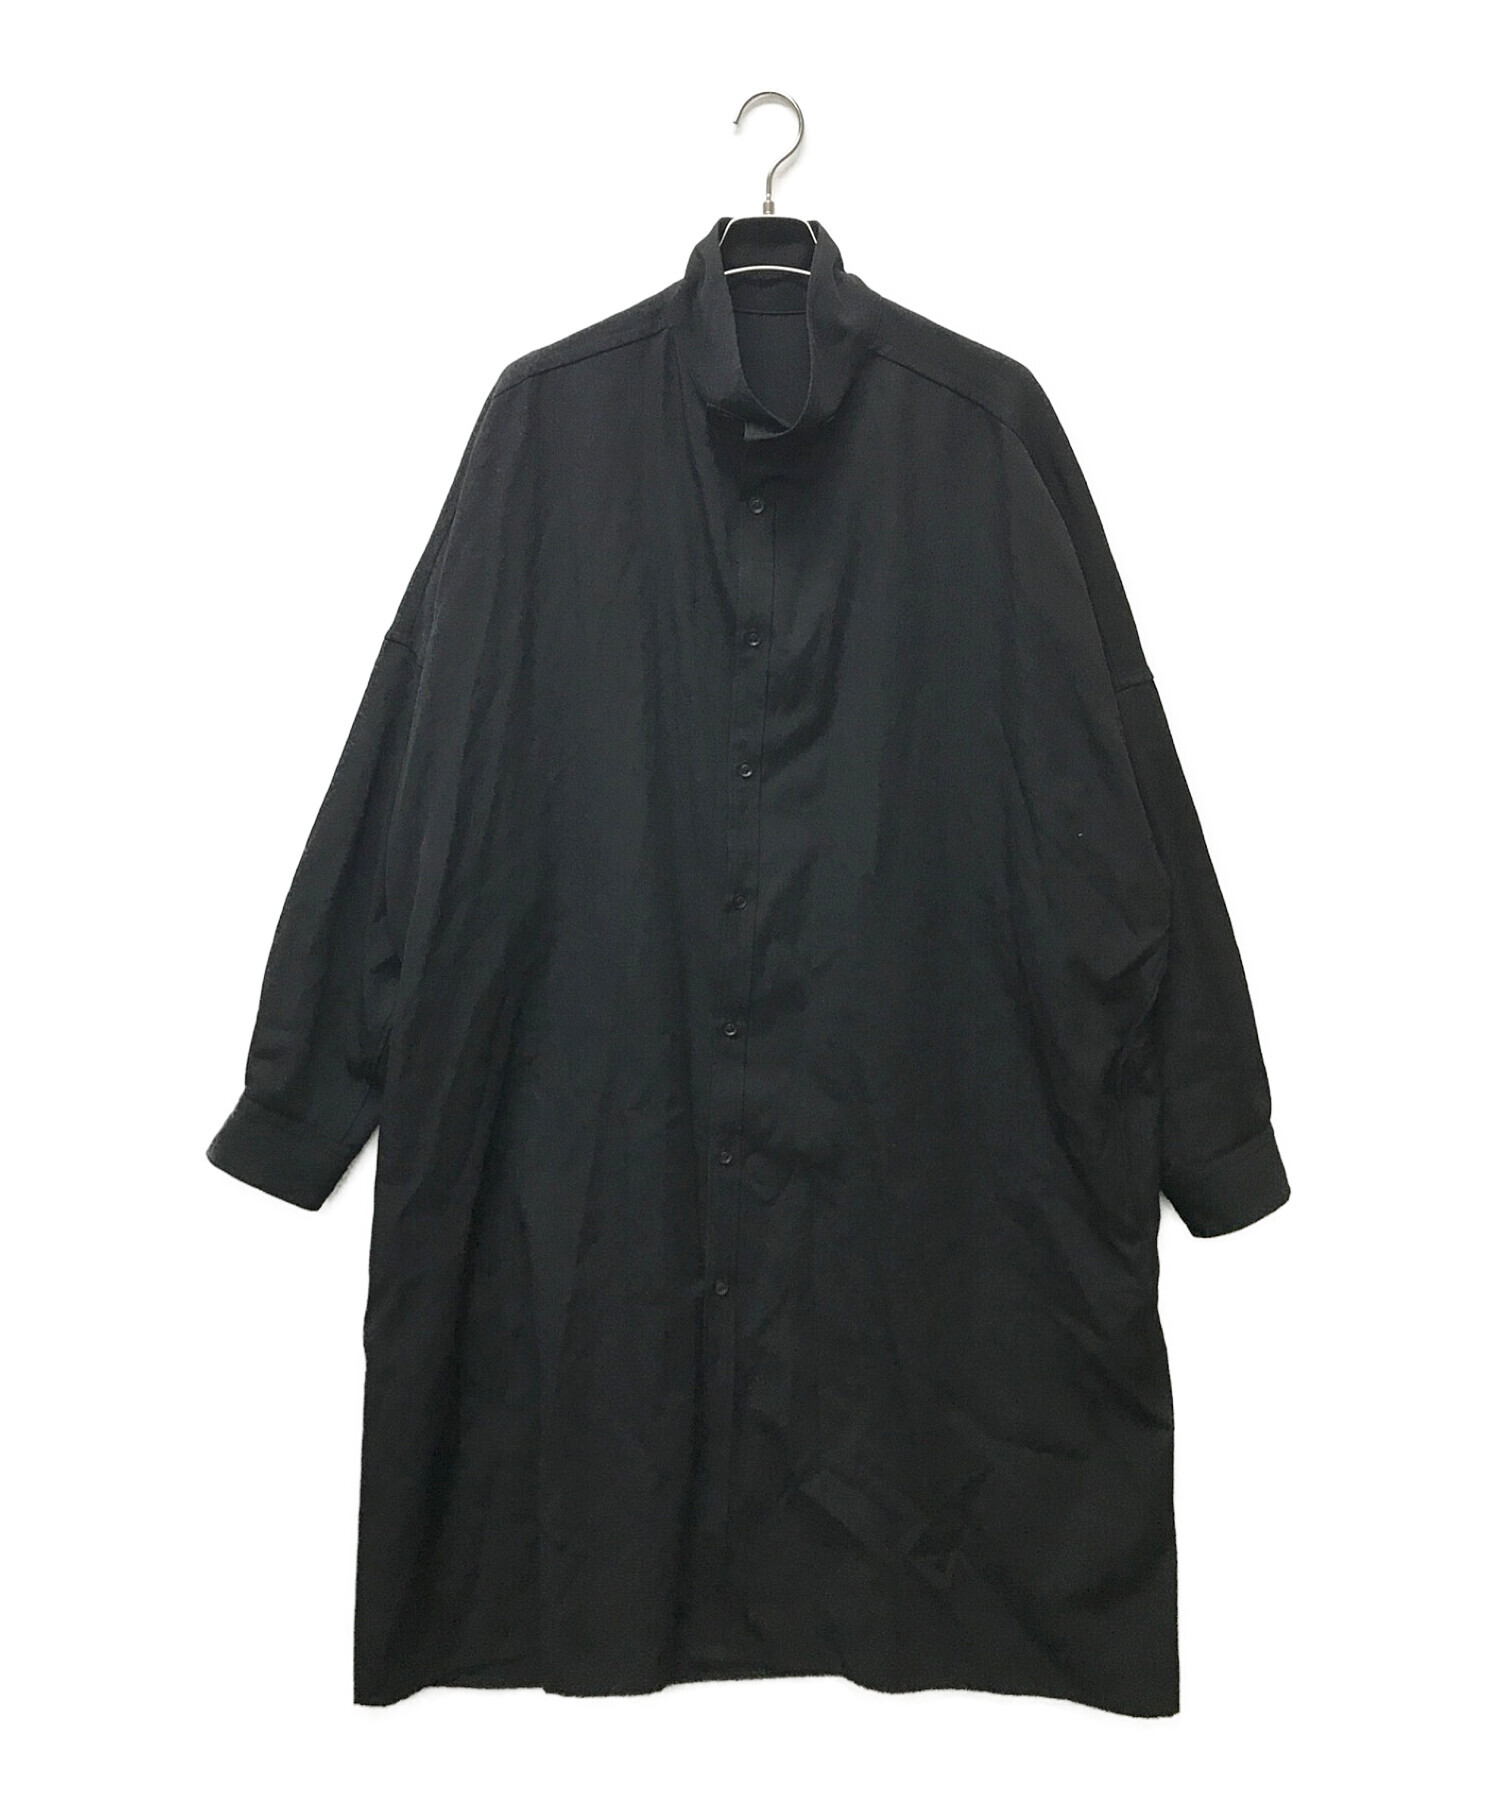 Yohji Yamamoto pour homme (ヨウジヤマモト プールオム) ウールギャバジンスタンドカラーロングシャツ ブラック サイズ:3